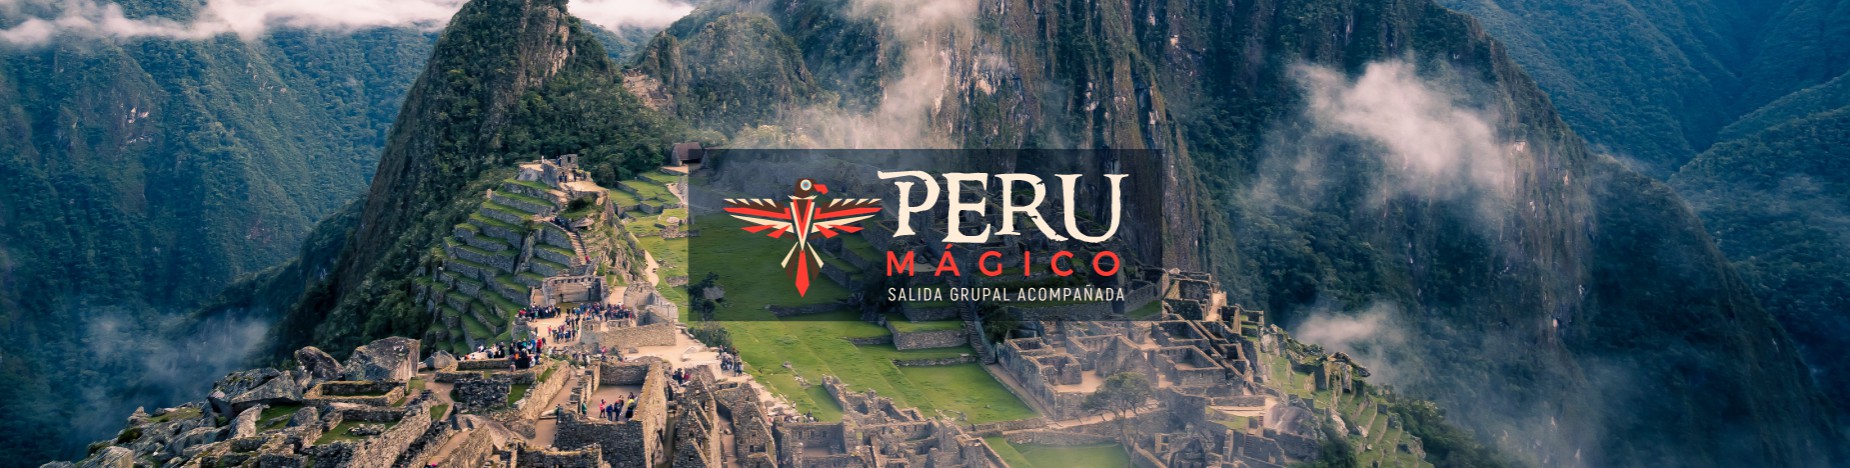 Peru magico